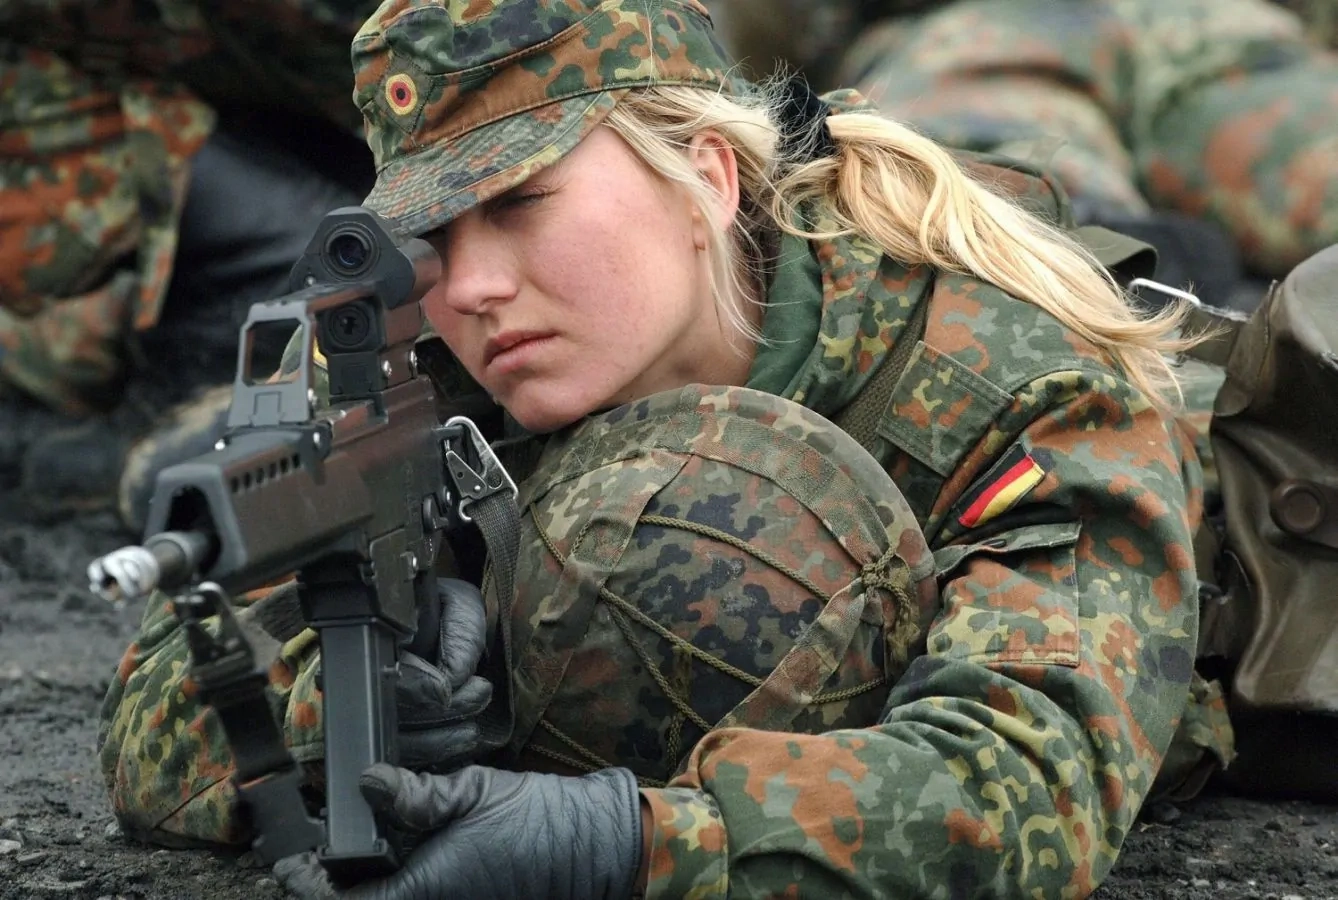 جنرال ألماني يدعو إلى تجنيد النساء في الجيش لتفعيل المساواة